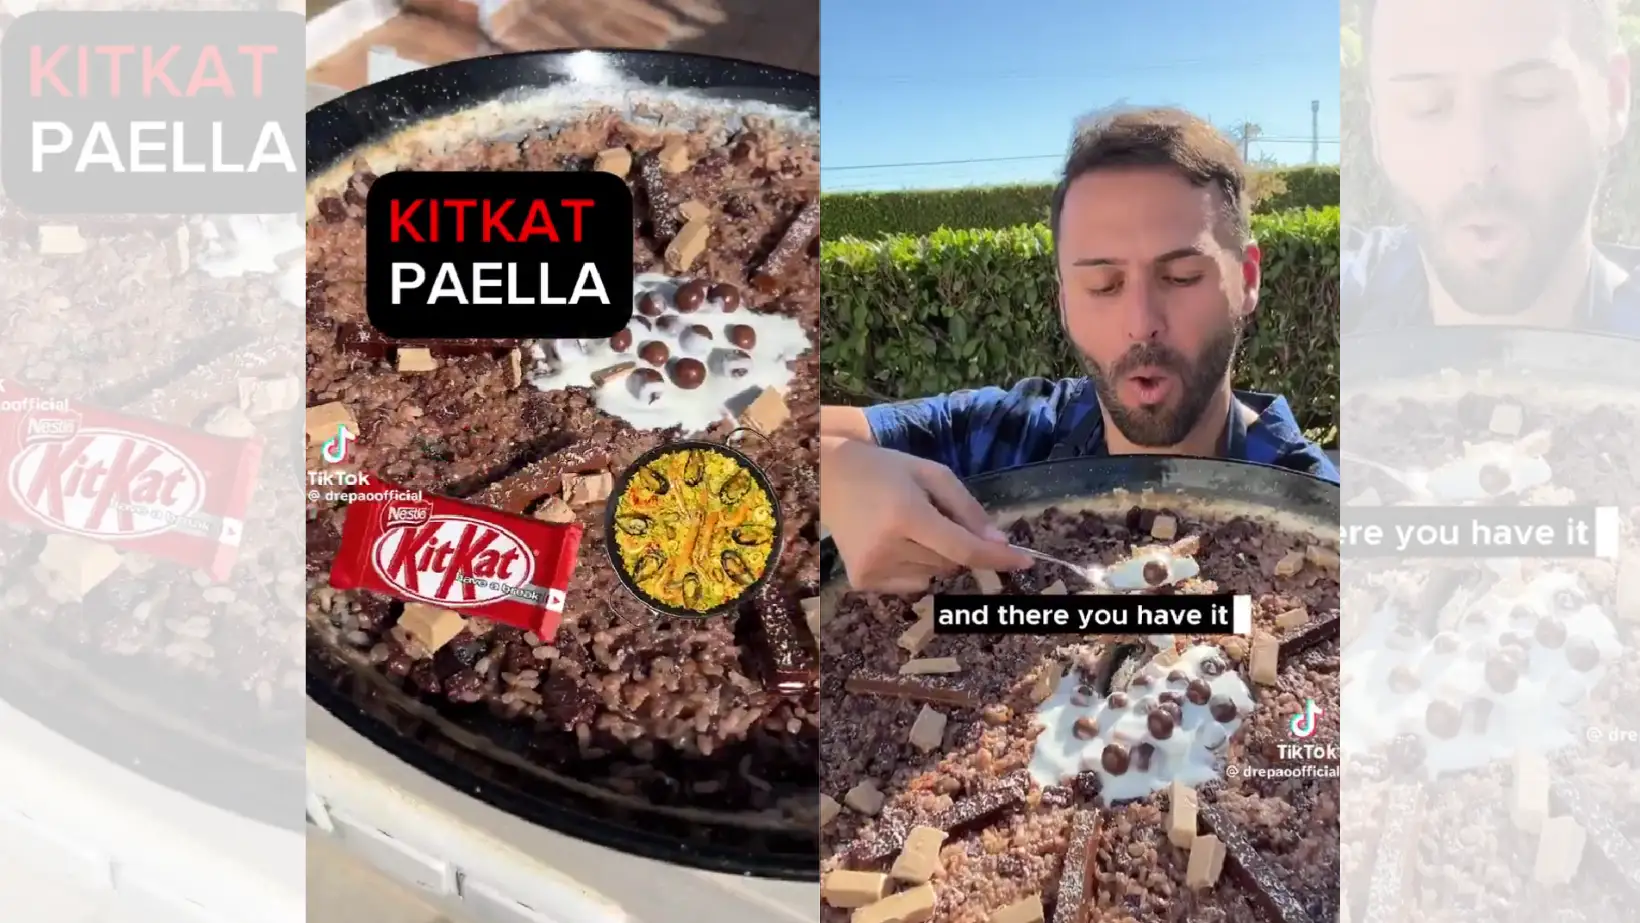 TikTok en el que prepara una paella de KitKat